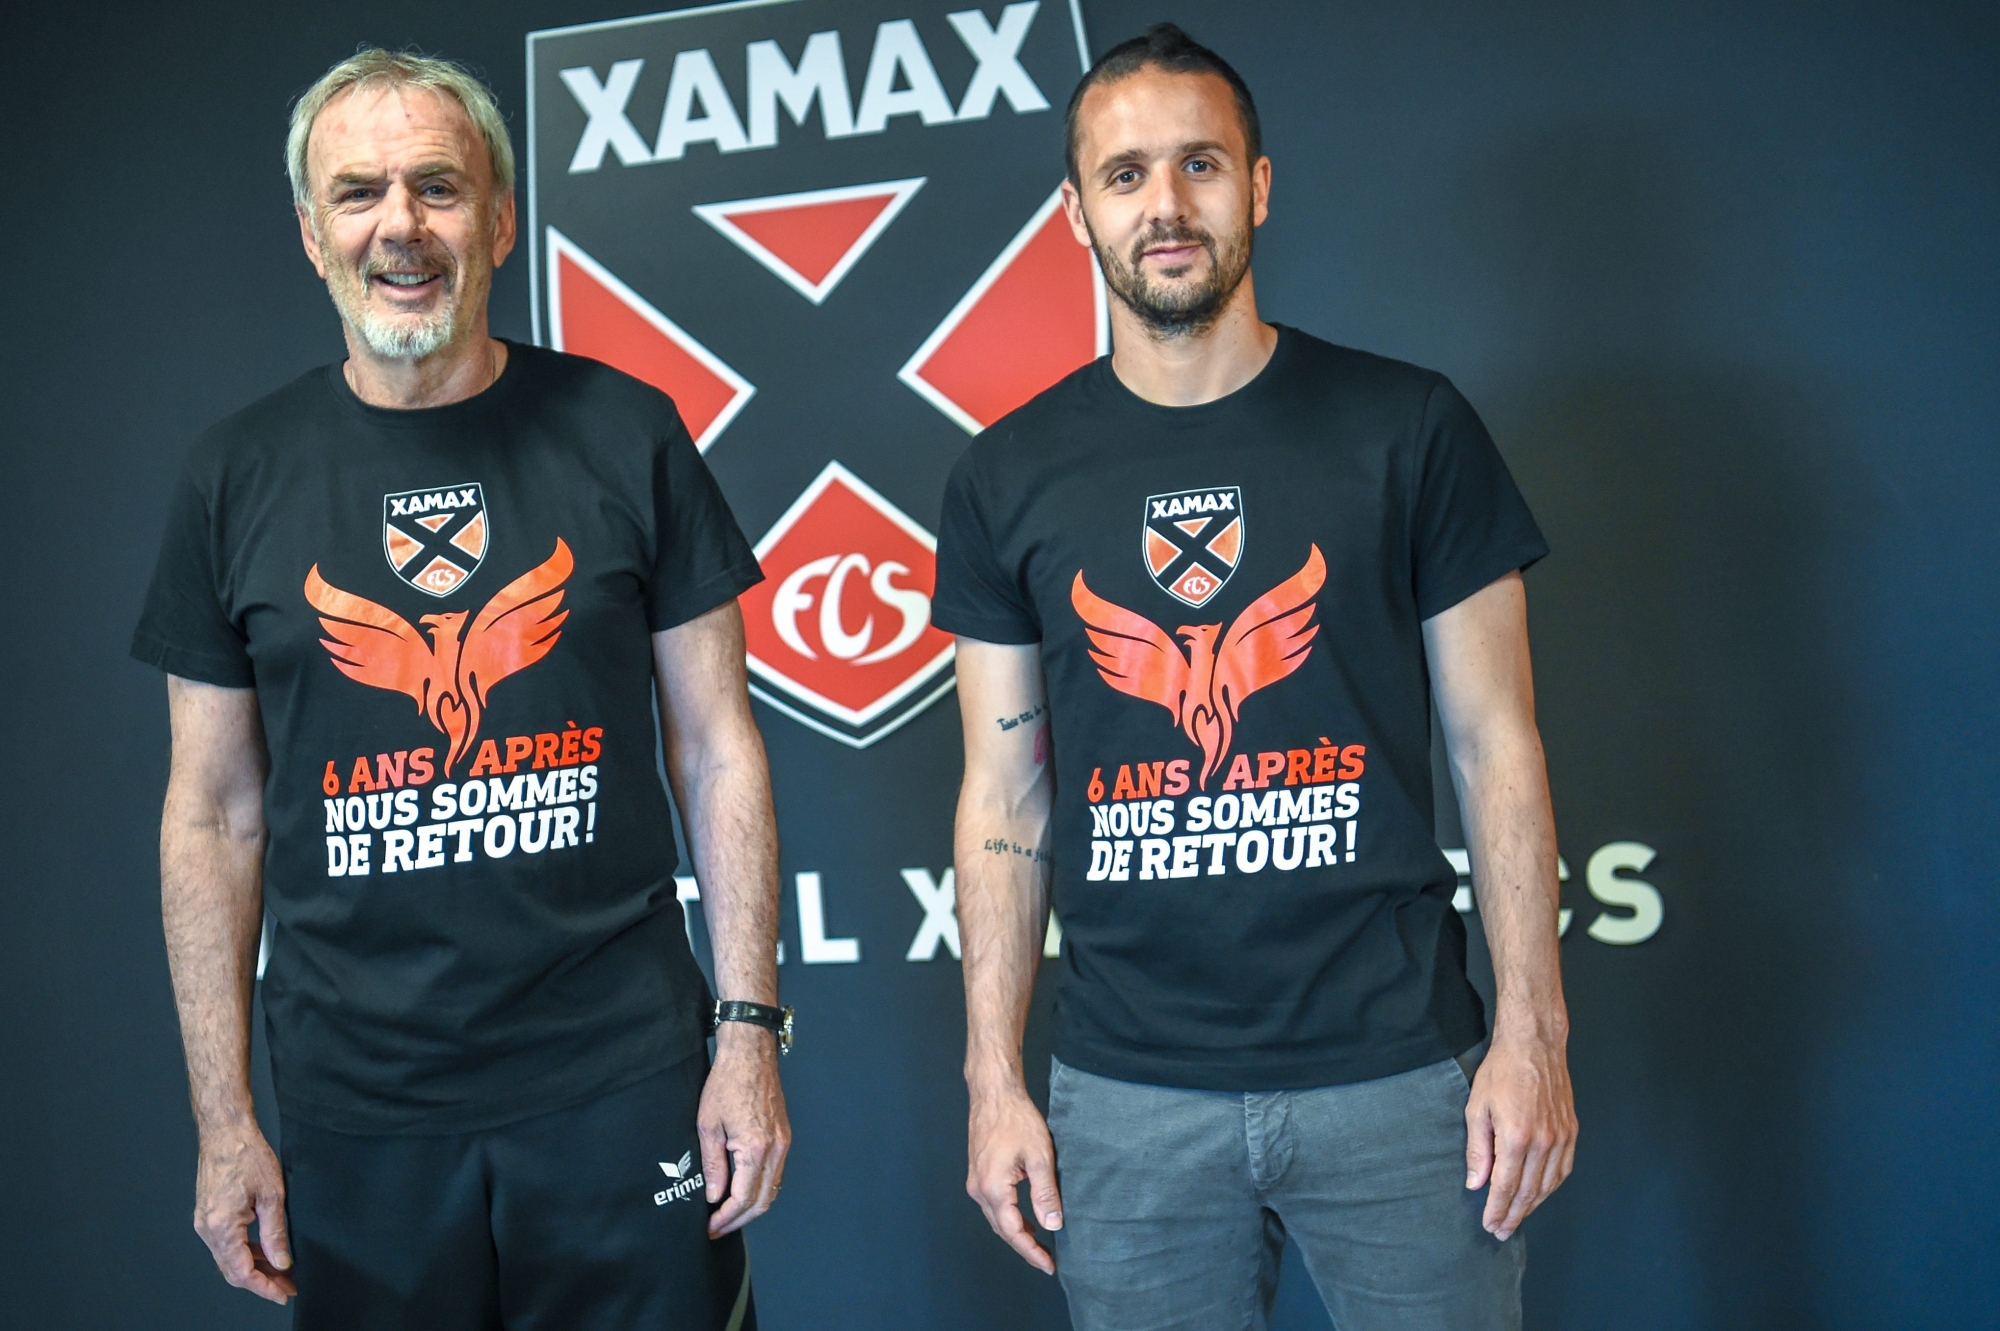  Michel Decastel et Raphaël Nuzzolo avec le T-shirt de la promotion.      NEUCHATEL 17/05/2018  Photo: Christian Galley